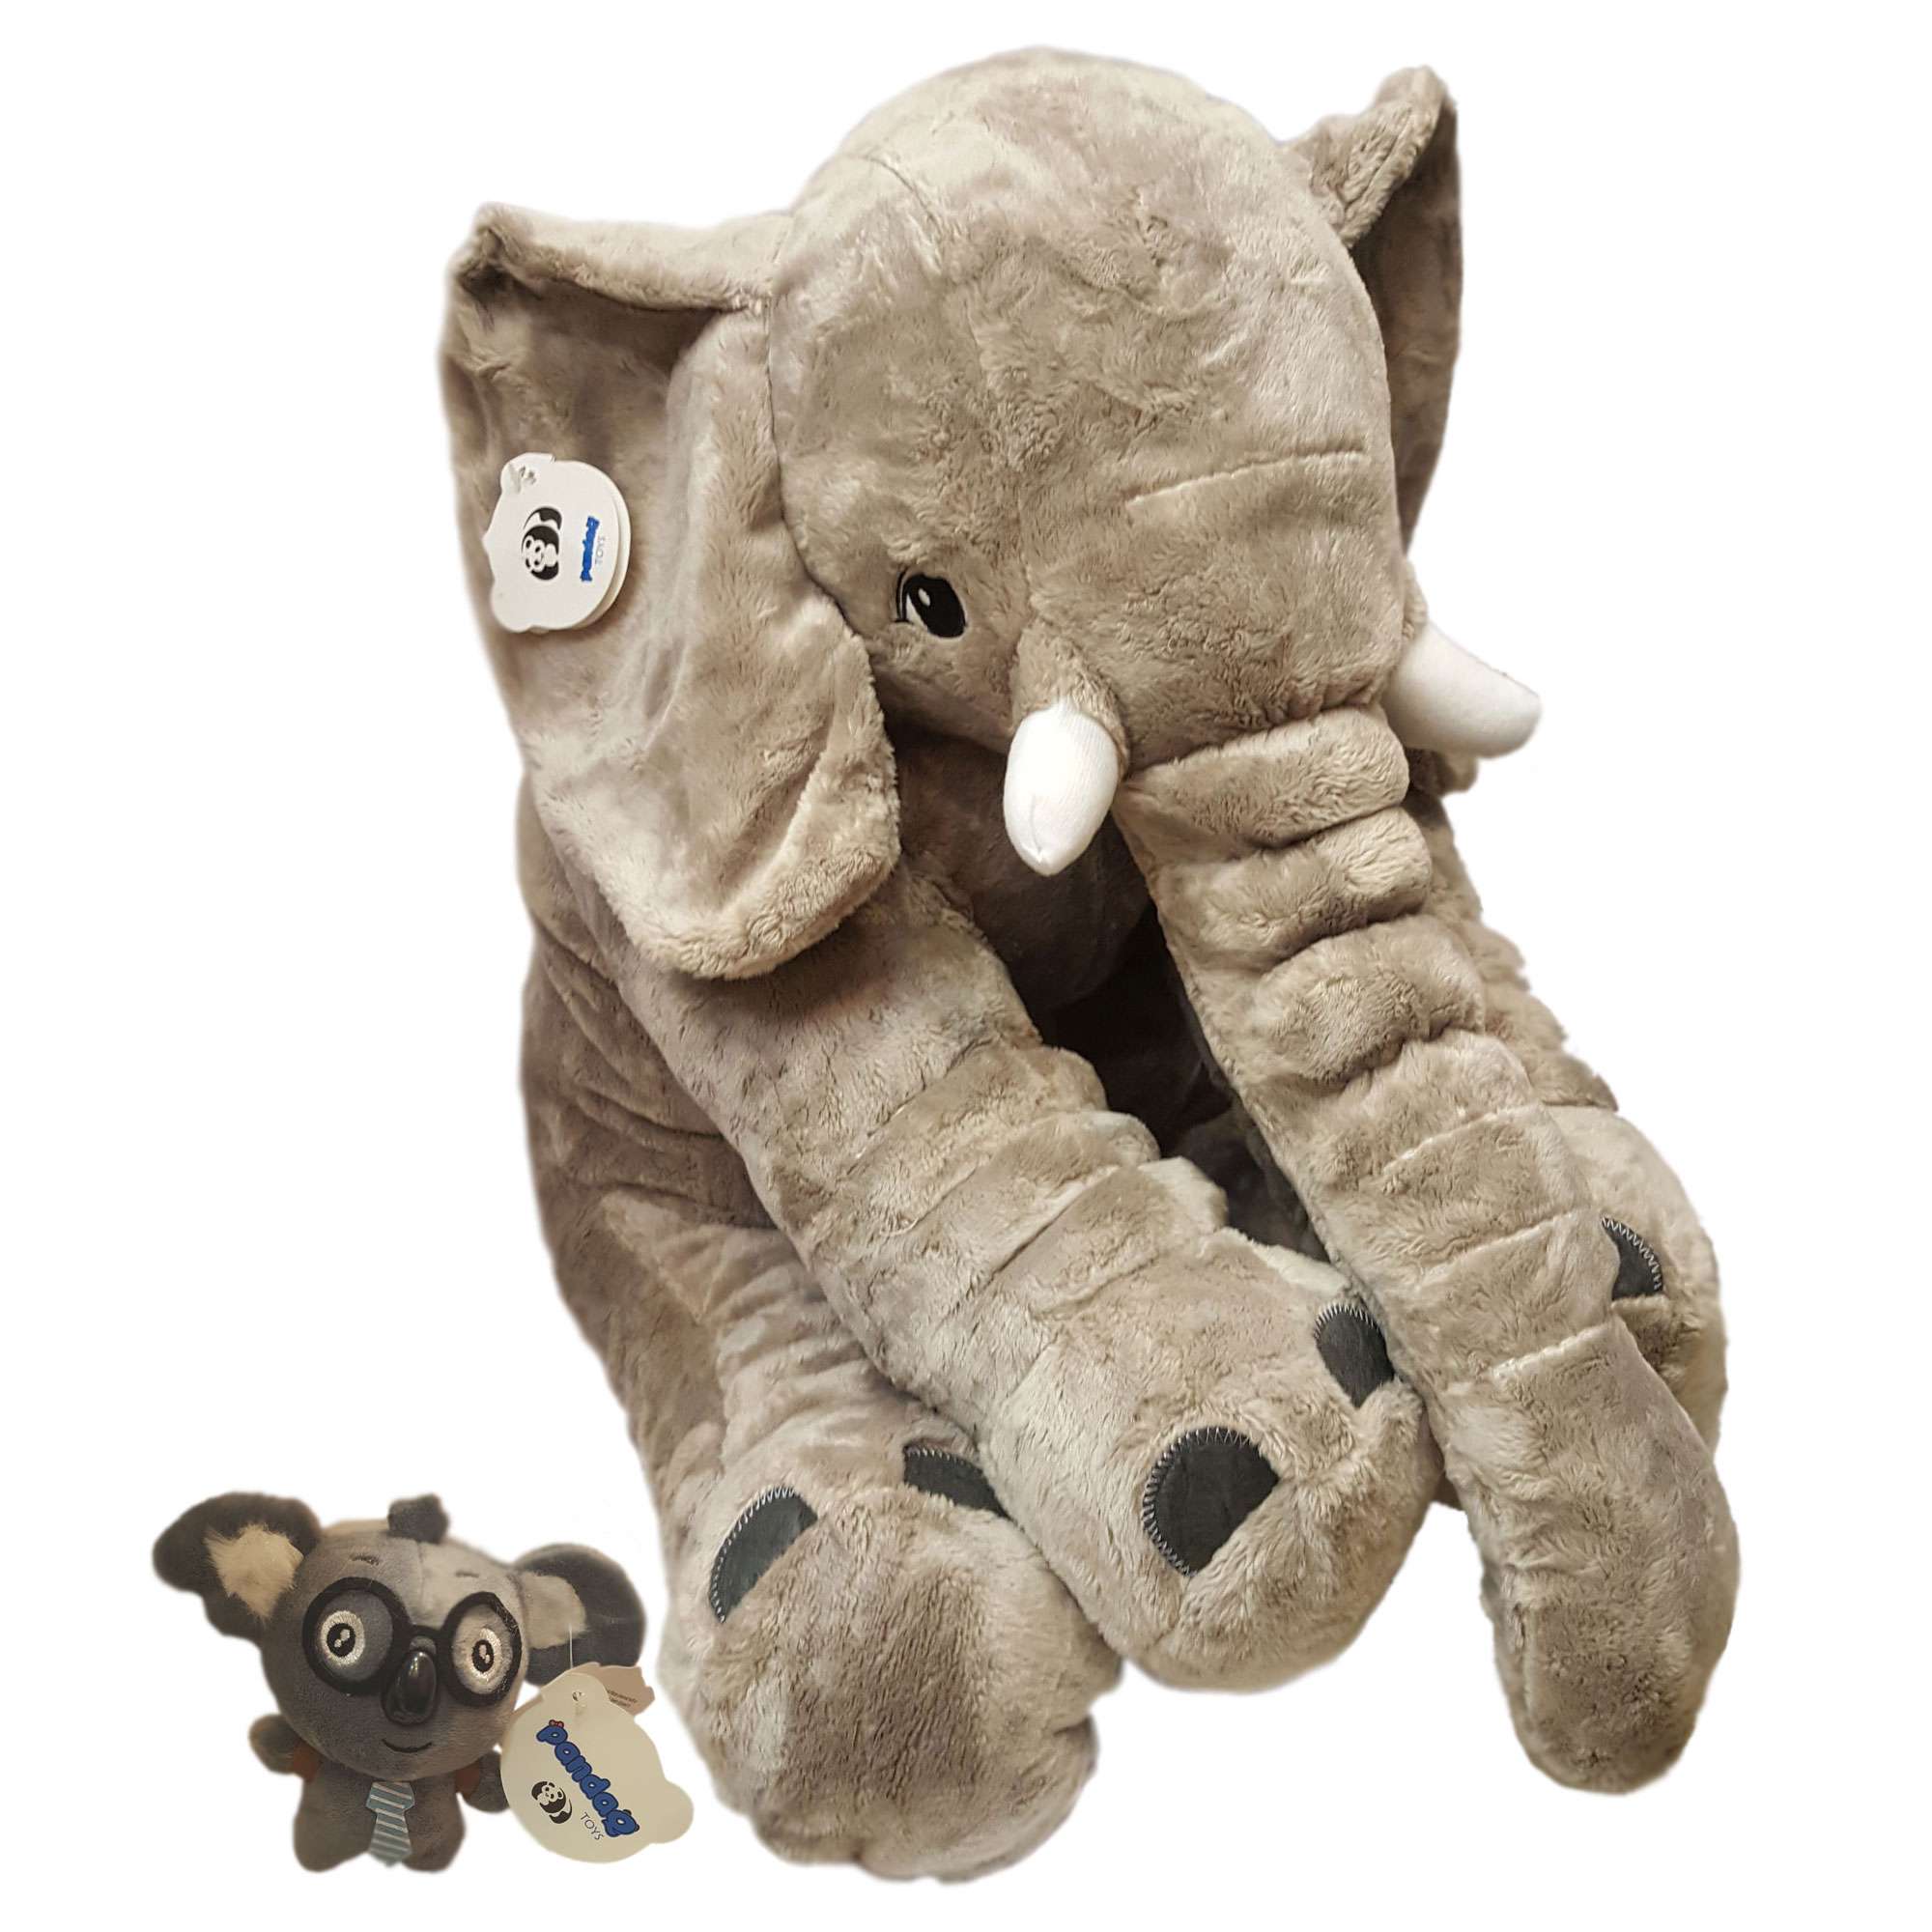 آنباکس عروسک پانداکیو طرح فیل مجموعه 2 عددی توسط نگاه هاشمی در تاریخ ۲۷ مهر ۱۳۹۹